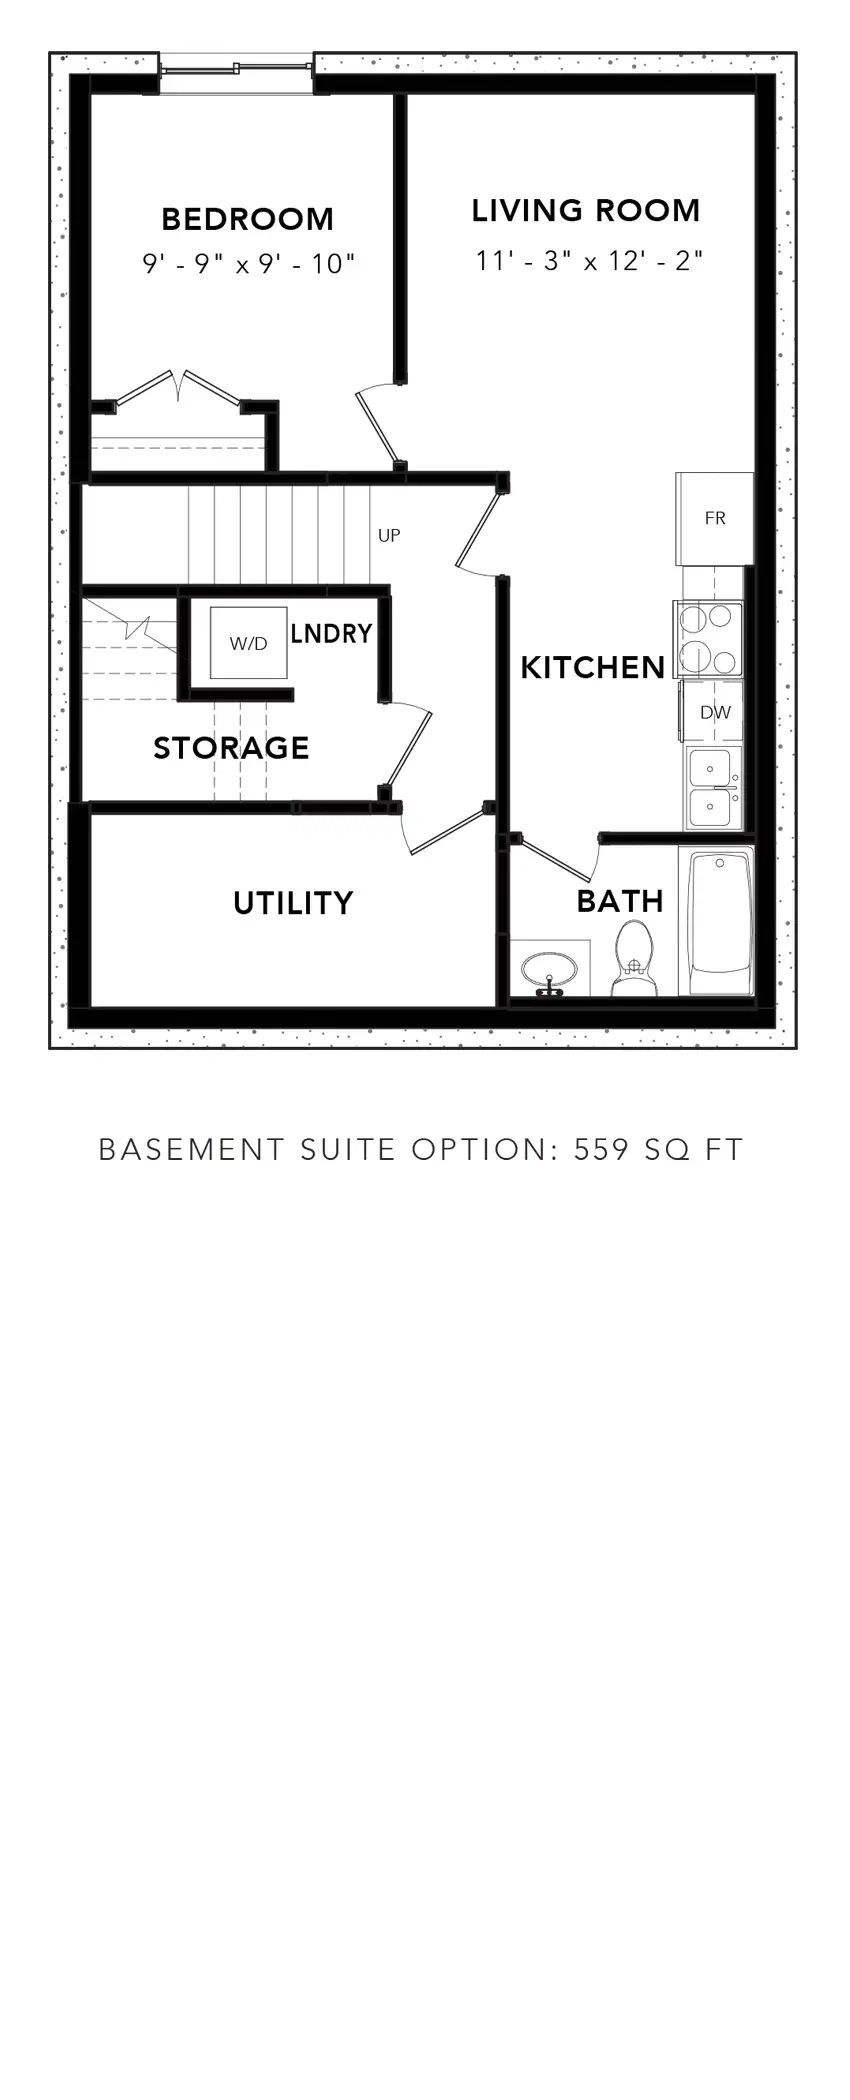 Red Oak Basement Suite Option